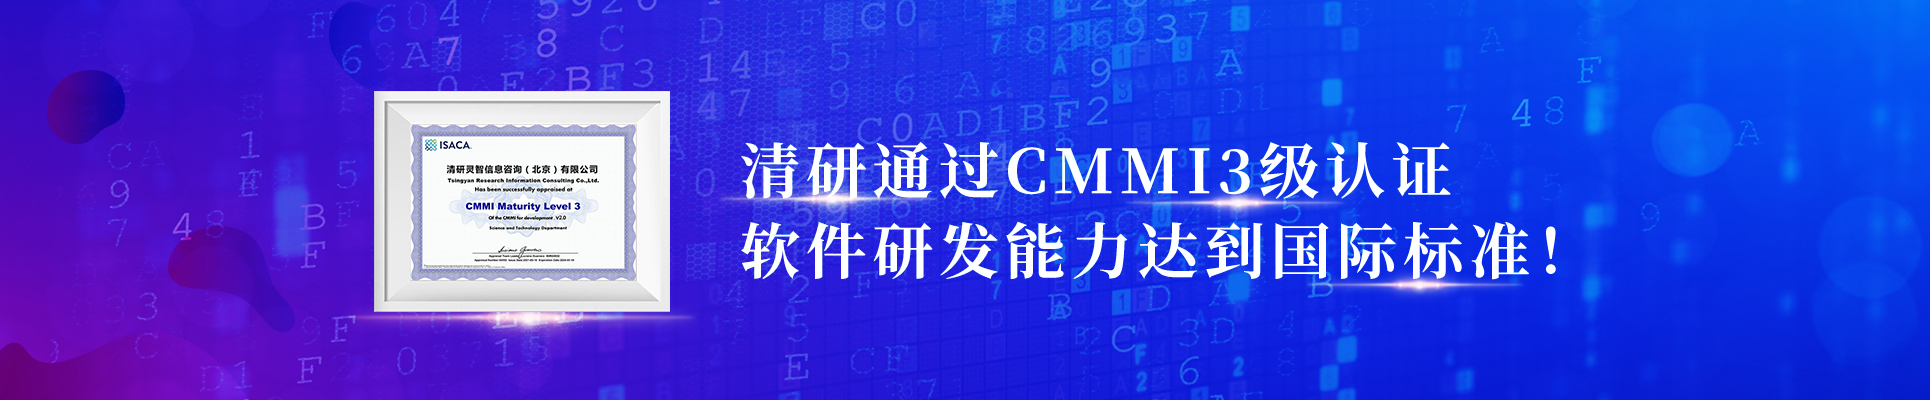 清研通過CMMI3級認證，軟件研發能力達到國際標準